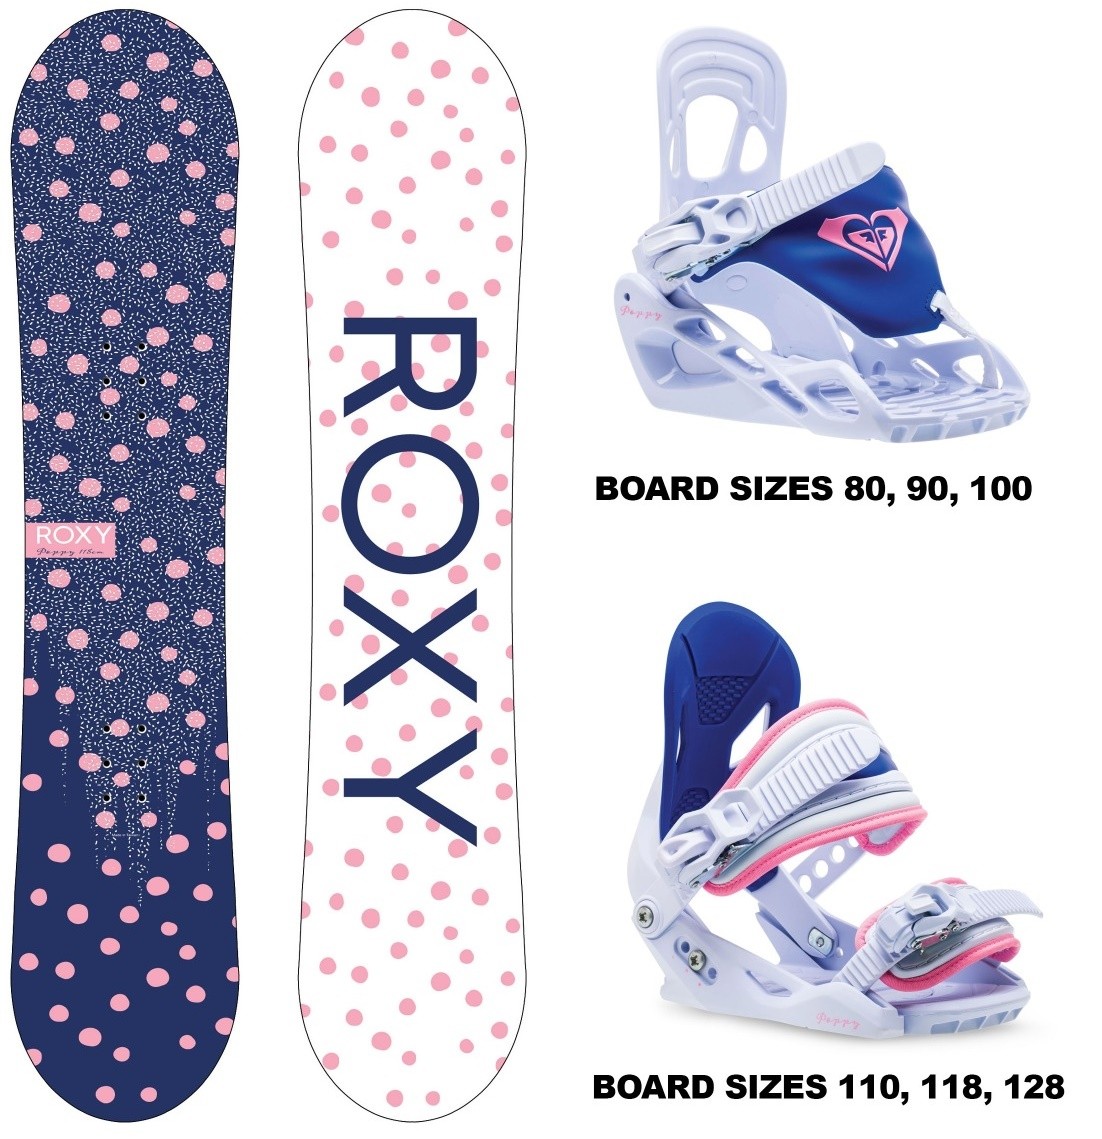 Roxy Poppy Çocuk Snowboard Ve Bağlama Seti